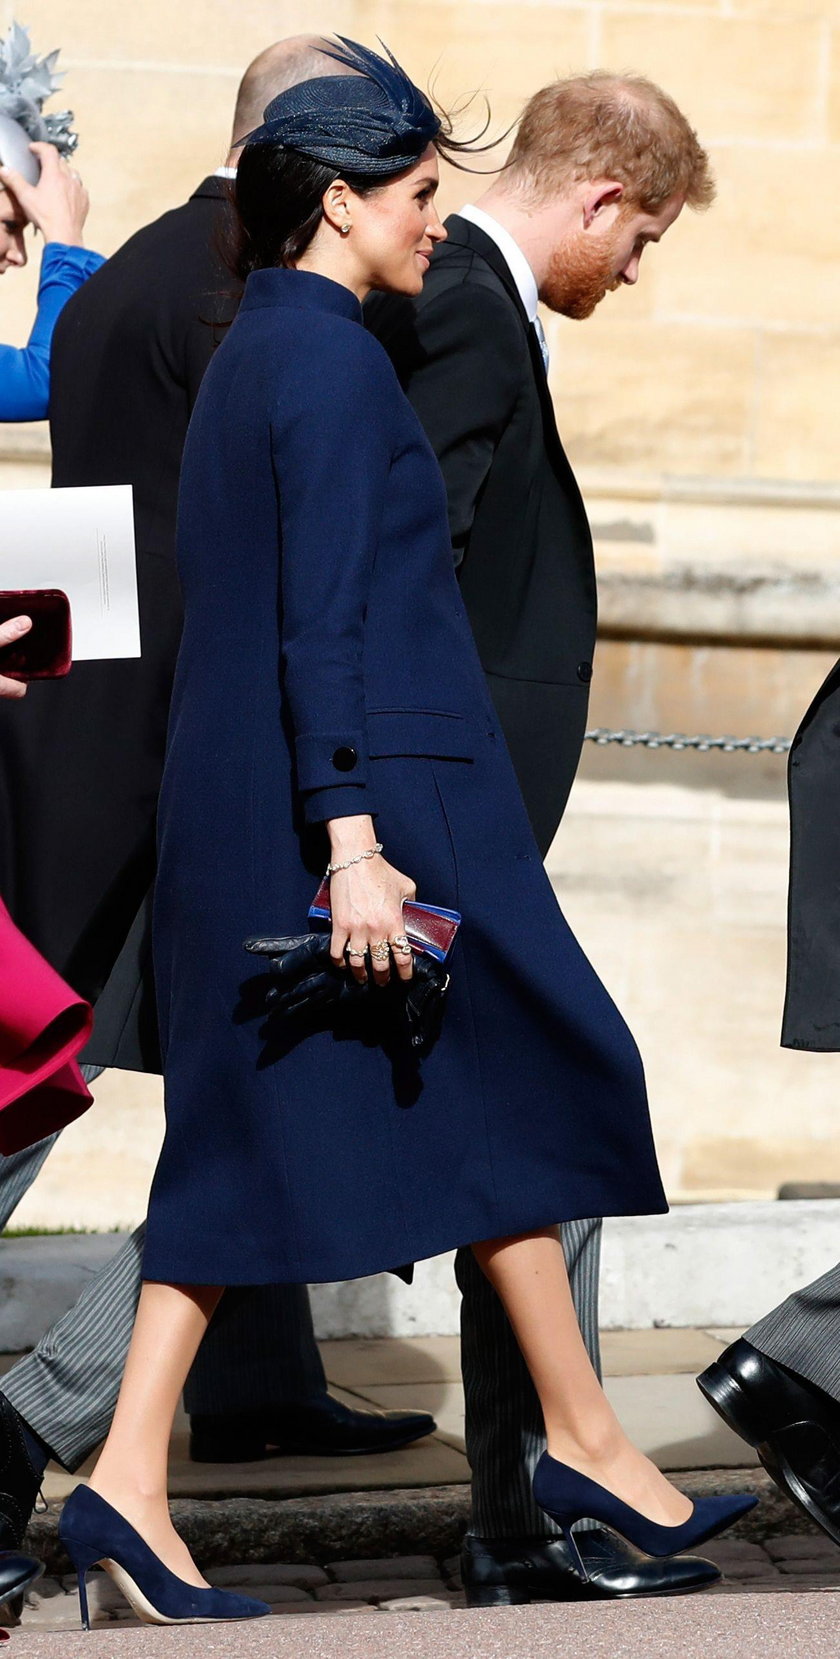 Księżna Meghan Markle jest w ciąży. Potwierdza to Pałac Kensington